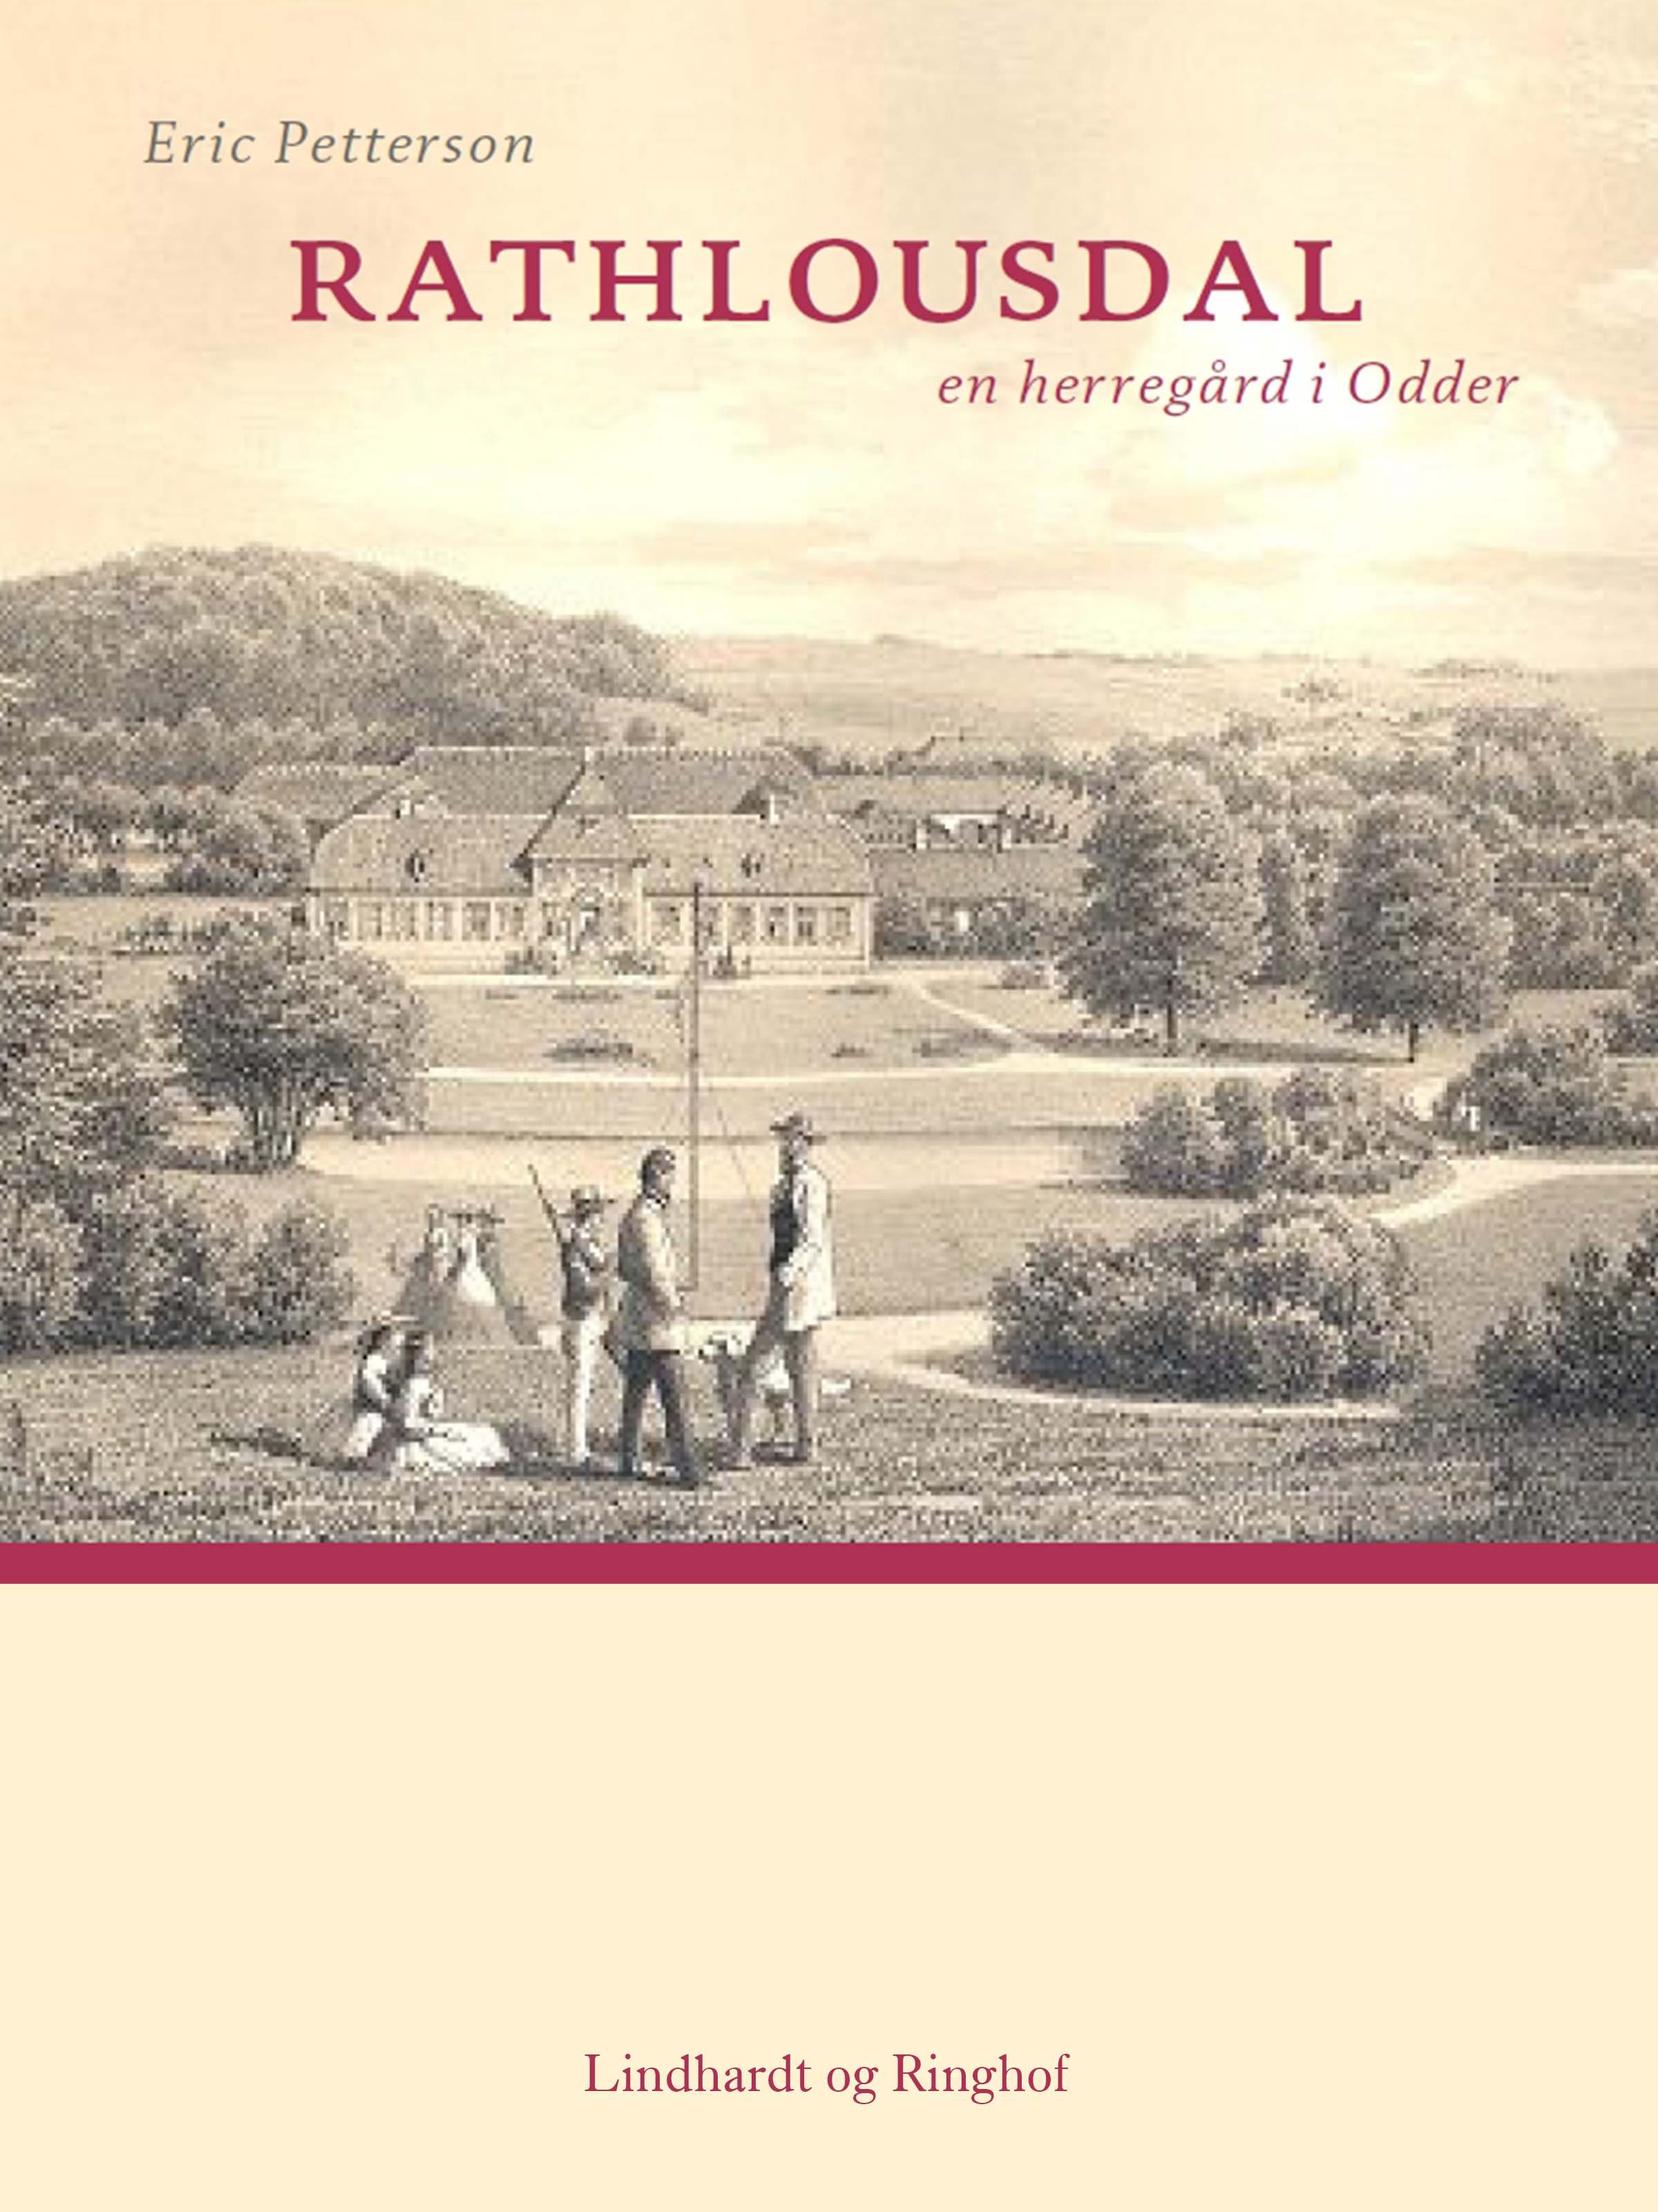 Rathlousdal - en herregård i Odder, e-bok av Eric Pettersson